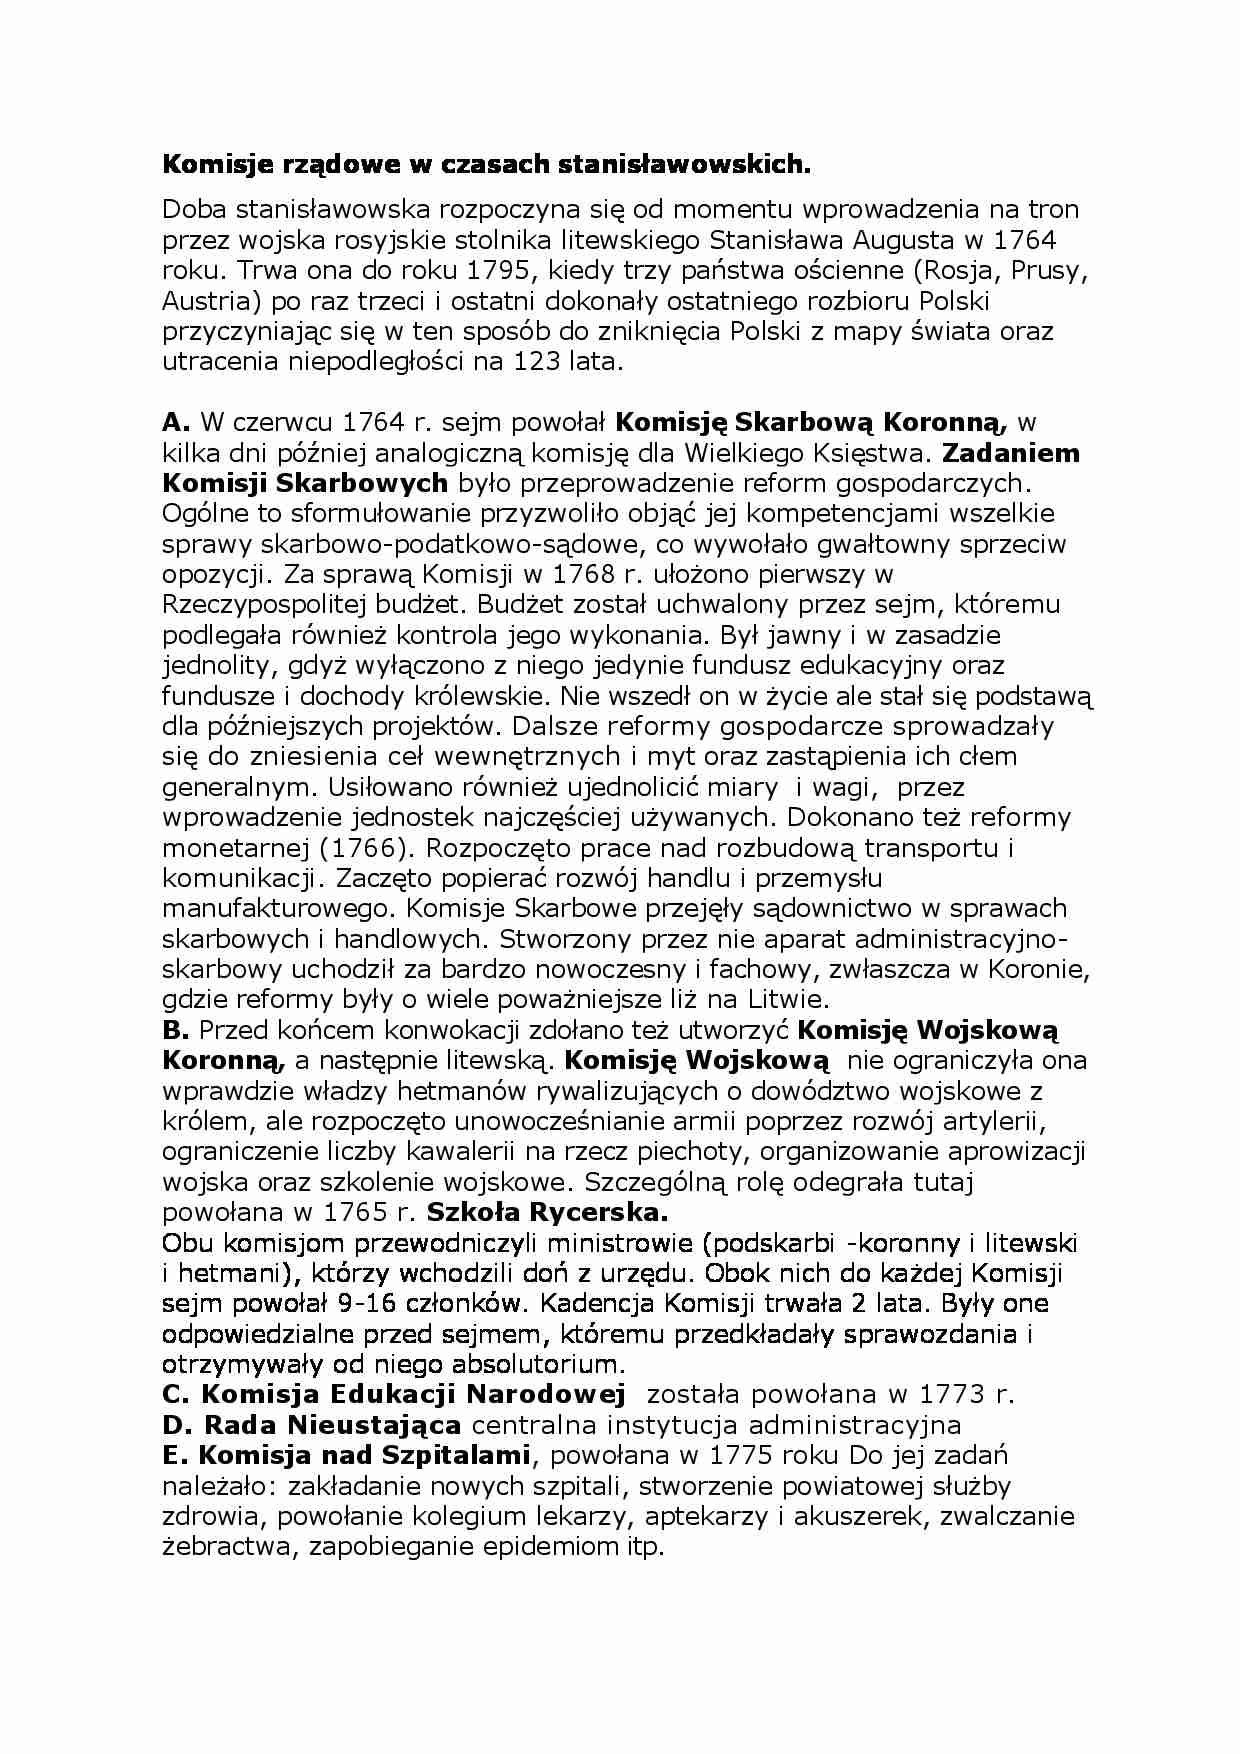 Komisje rządowe w czasach stanisławowskich - strona 1